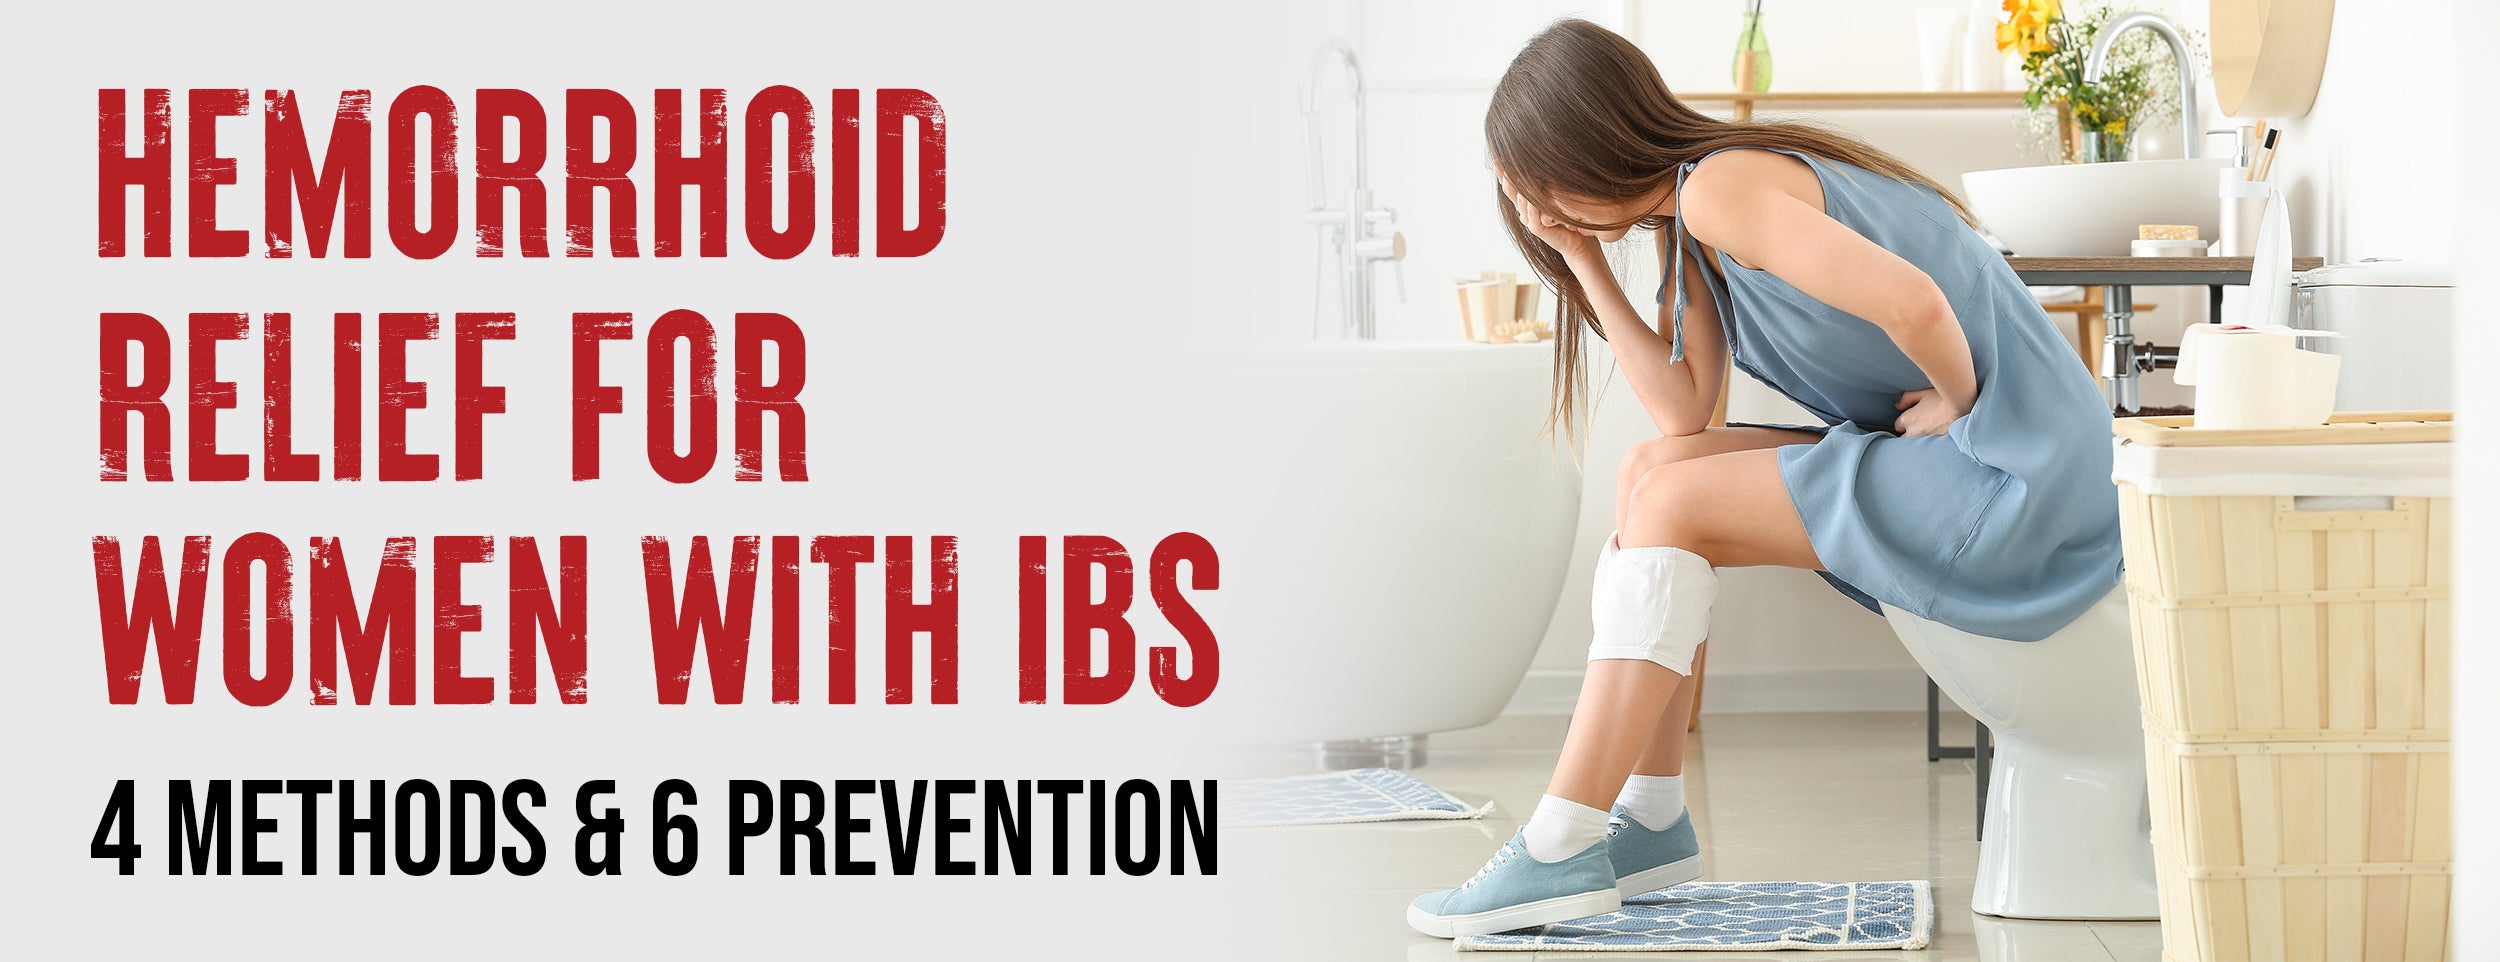 3 Best Treatment Procedures for Hemorrhoids in Women with IBS